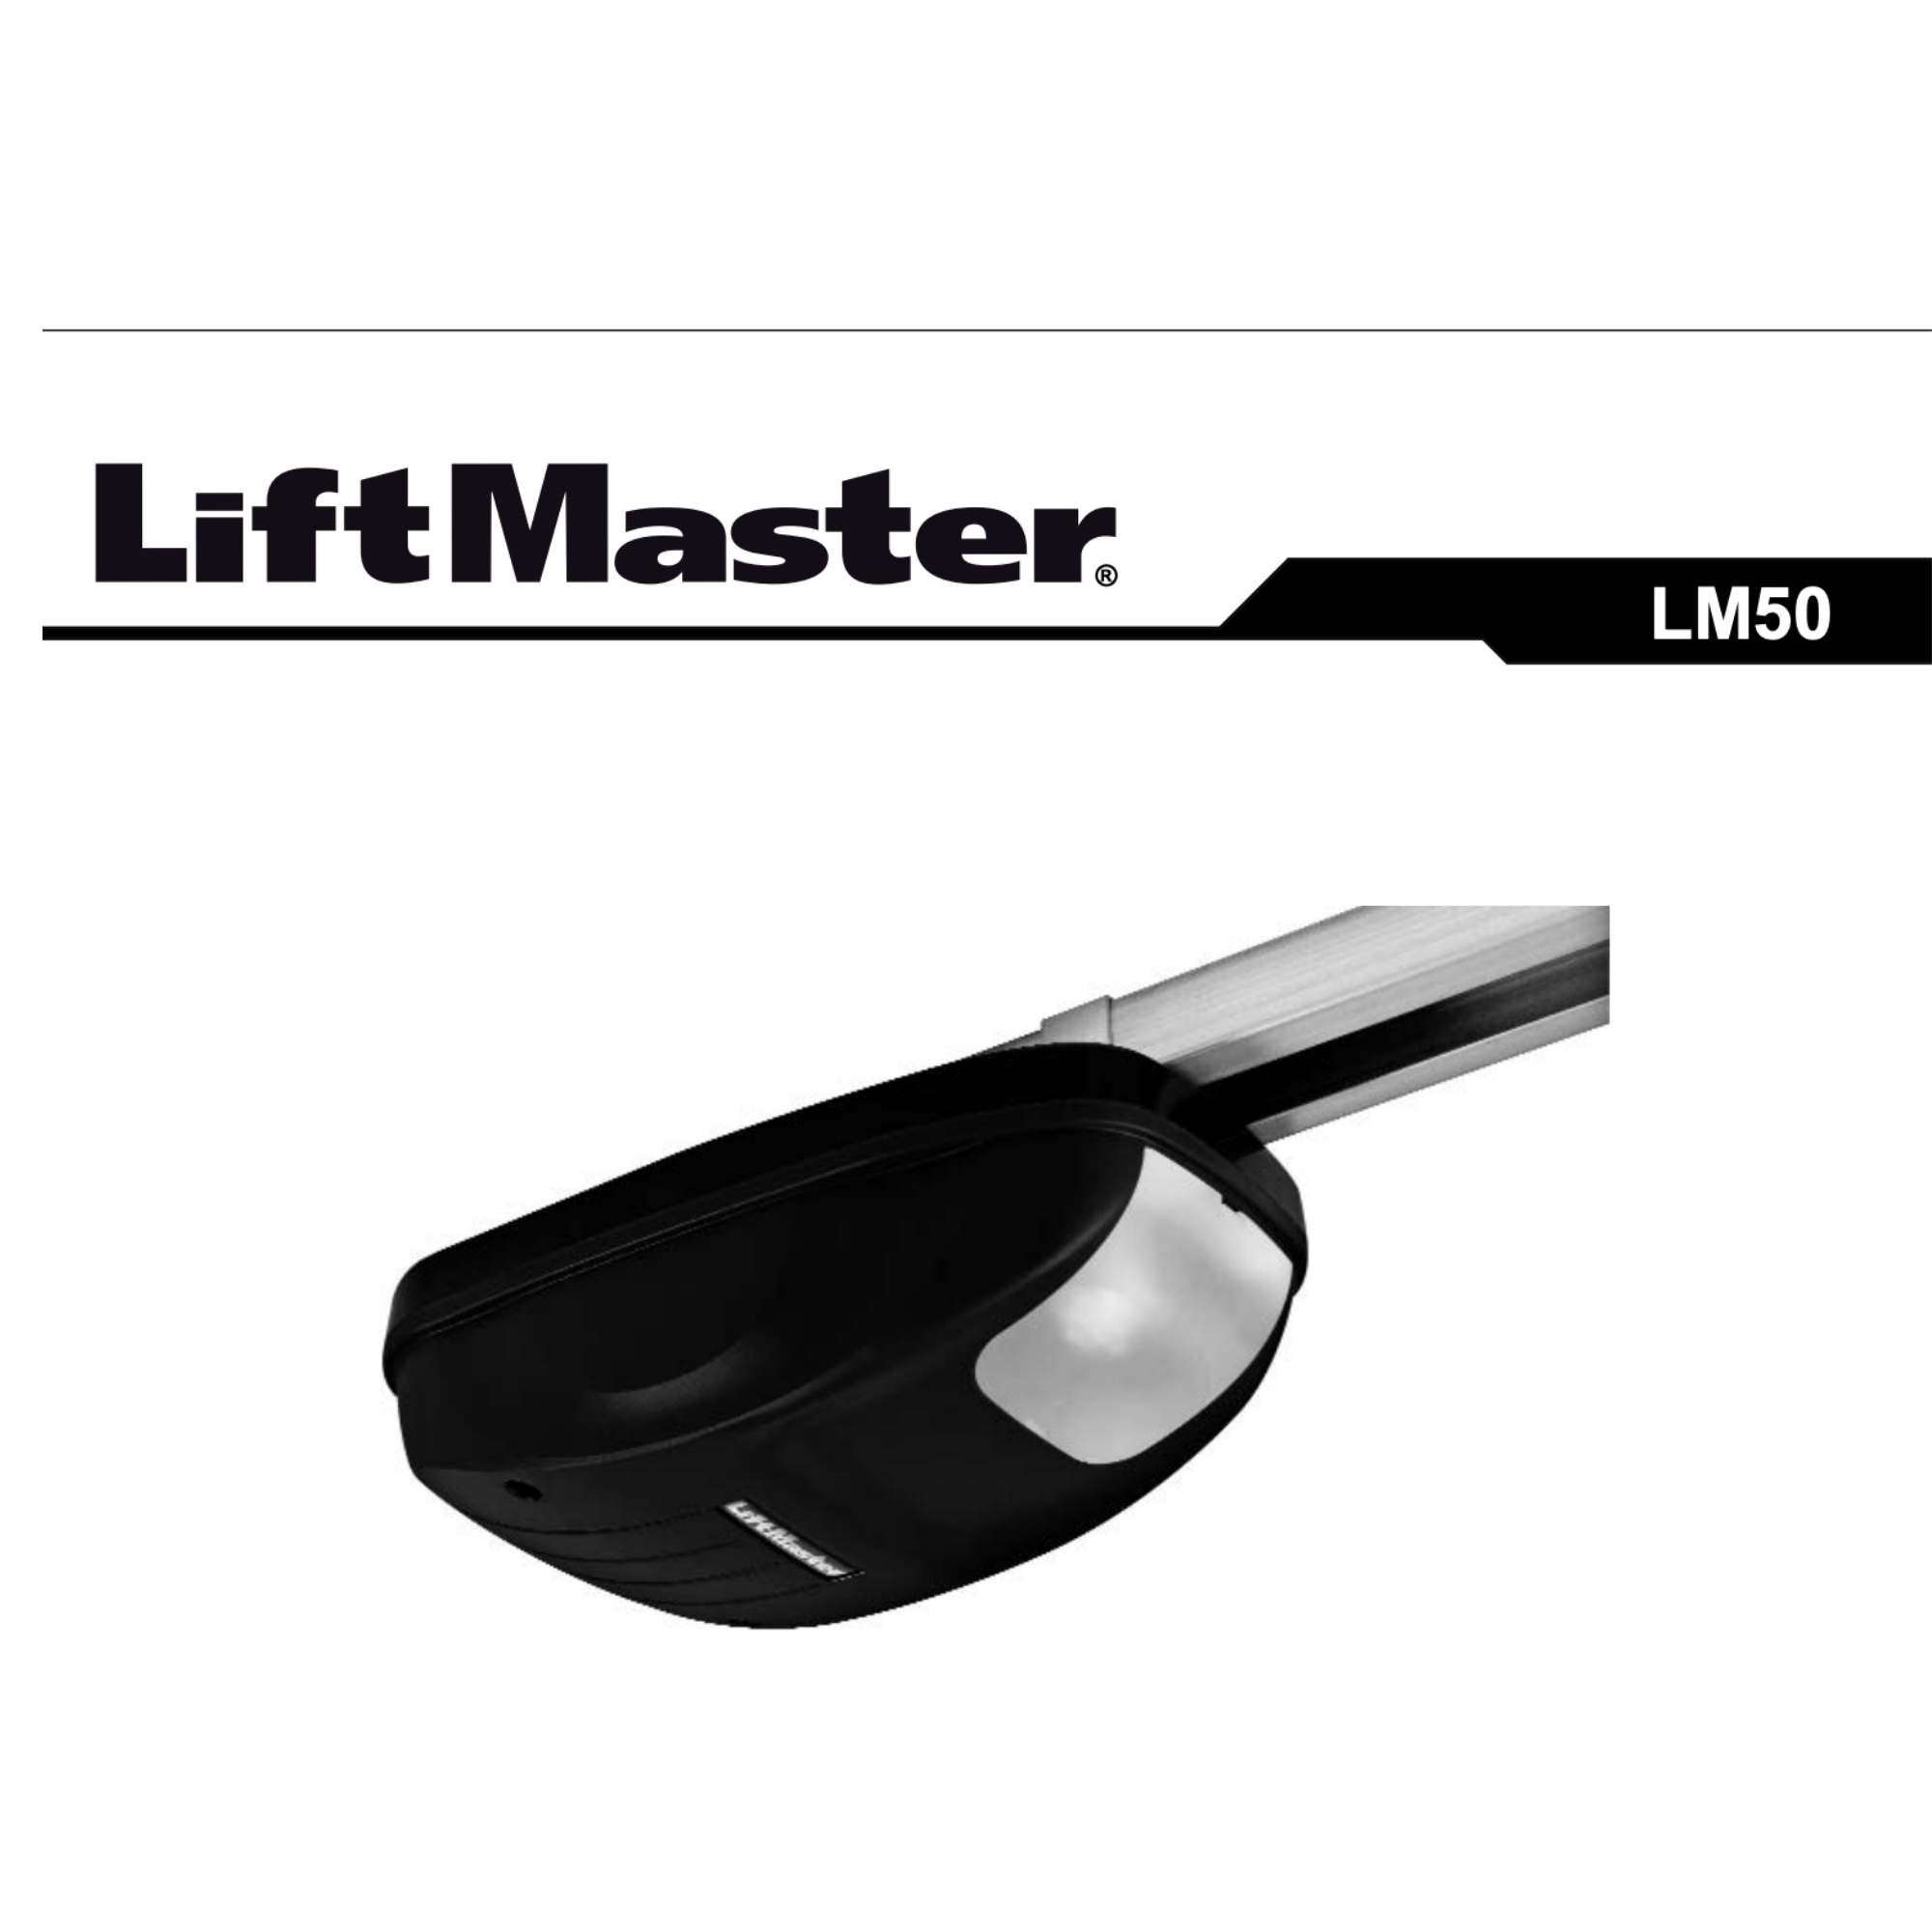 Montering og bruksanvisning for portåpner LM50